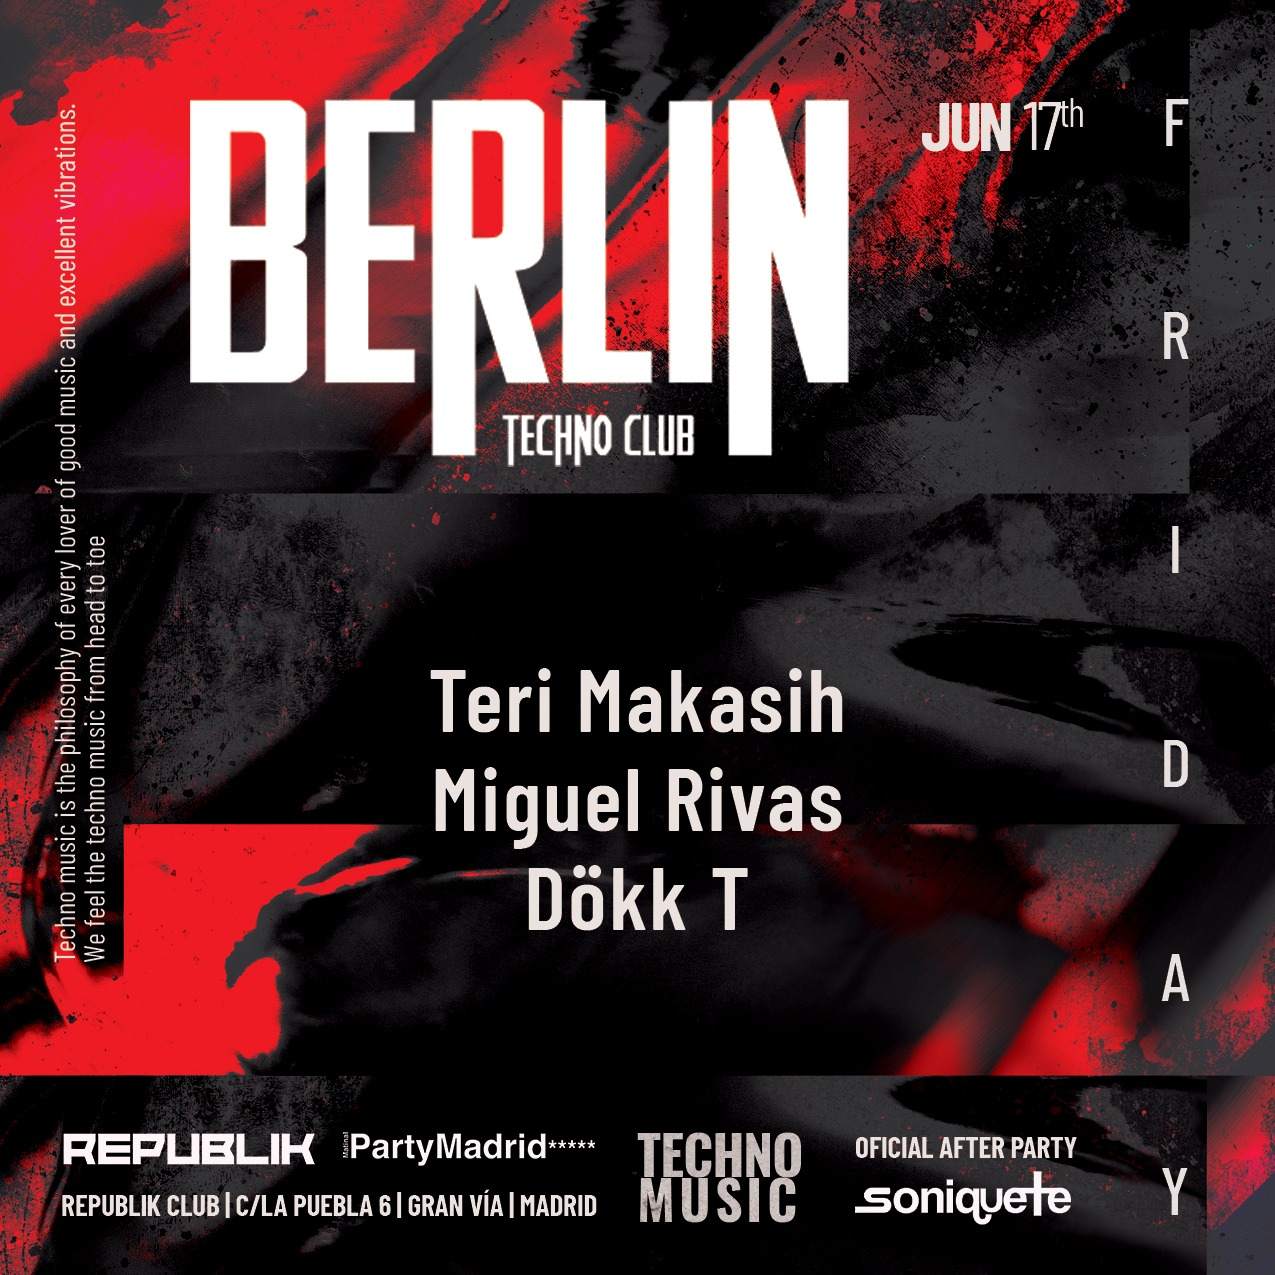 Berlin Techno Club  at Republik Club, Madrid